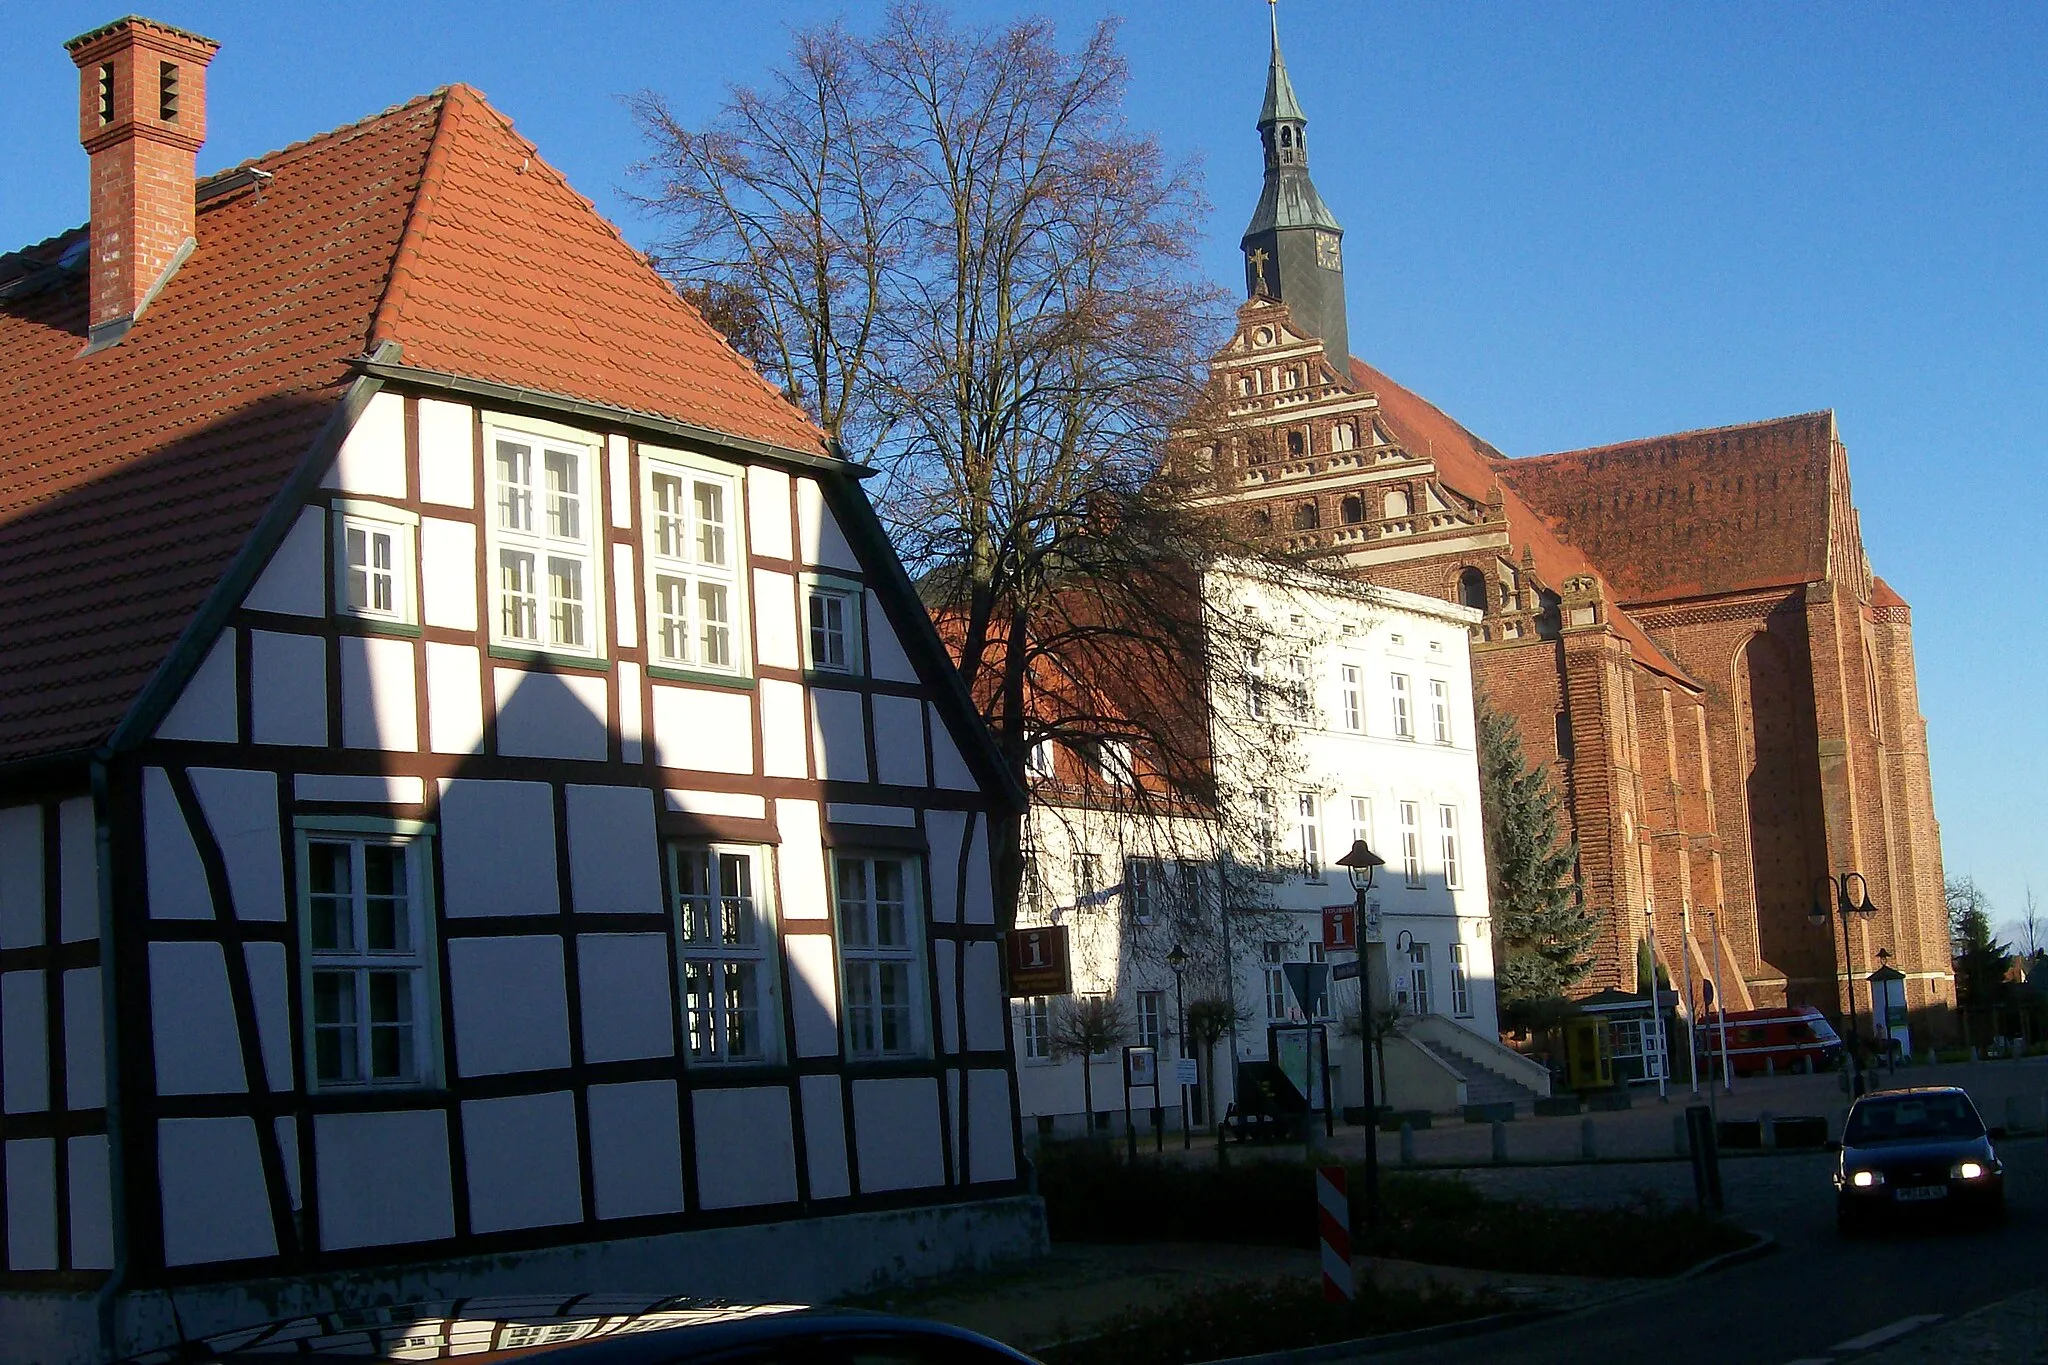 Photo showing: Zwei ehemalige Rathäuser in de:Bad Wilsnack:Links das "Alte Rauhaus" aus dem 18. Jahrhundert; in der Mitte das "Neue Rathaus" von 1865, jetzt Sitz des Amtes Bad Wilsnack; rechts die de:Wunderblutkirche (Bad Wilsnack)